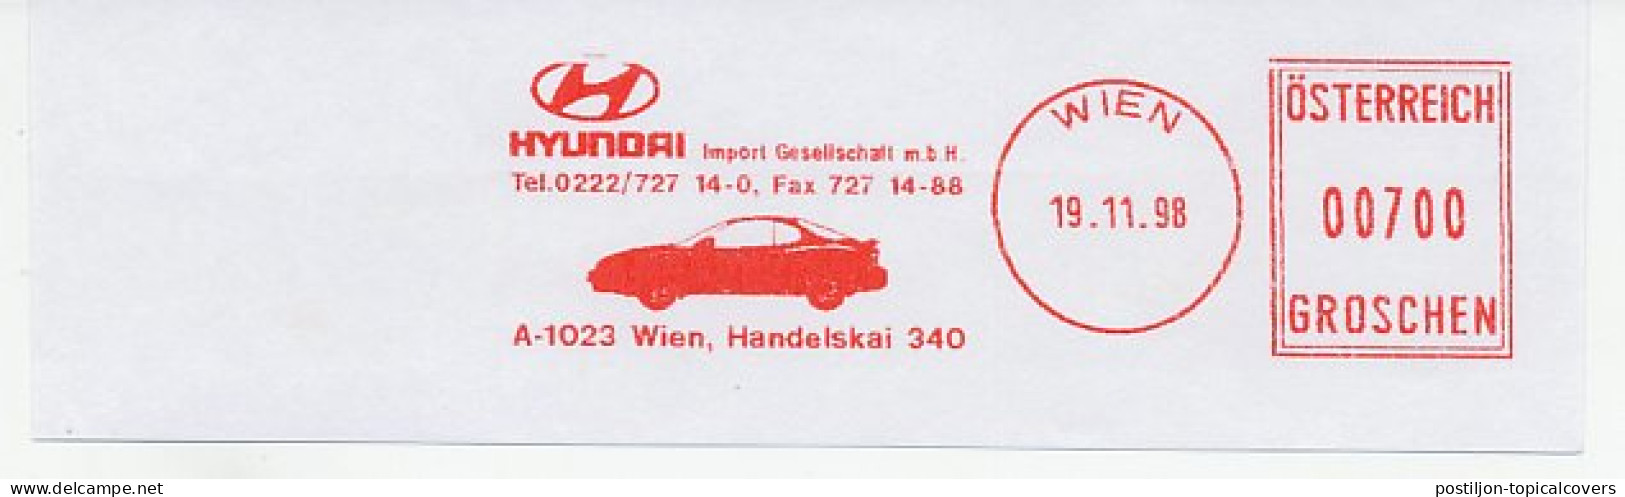 Meter Cut Austria 1998 Car - Hyundai - Voitures